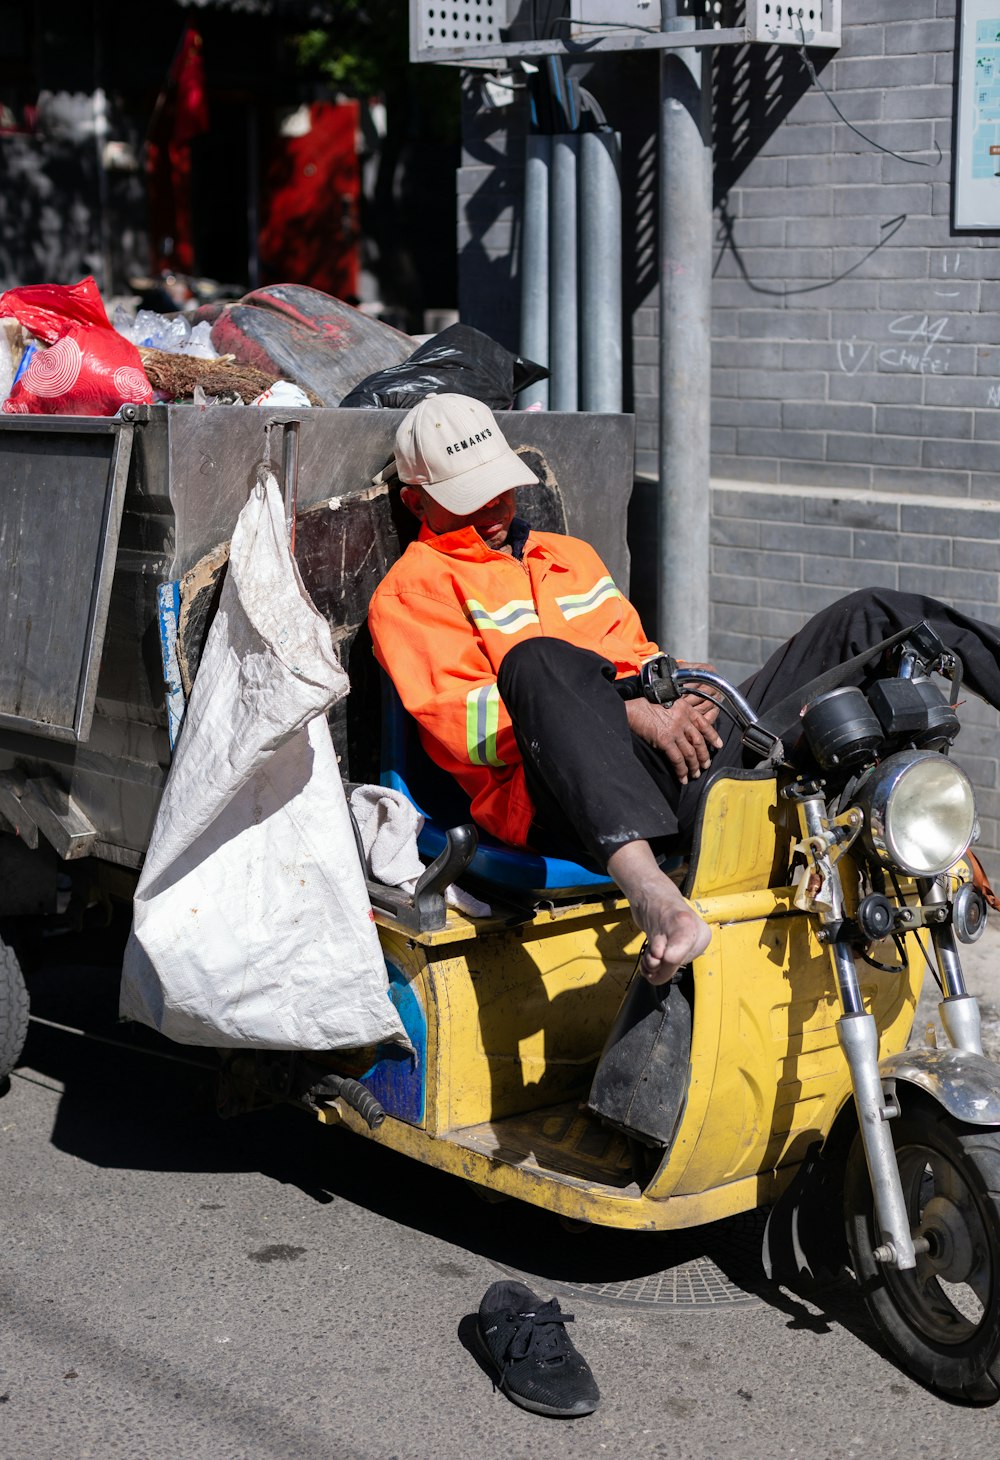 homme en veste orange et blanche assis sur une moto jaune pendant la journée